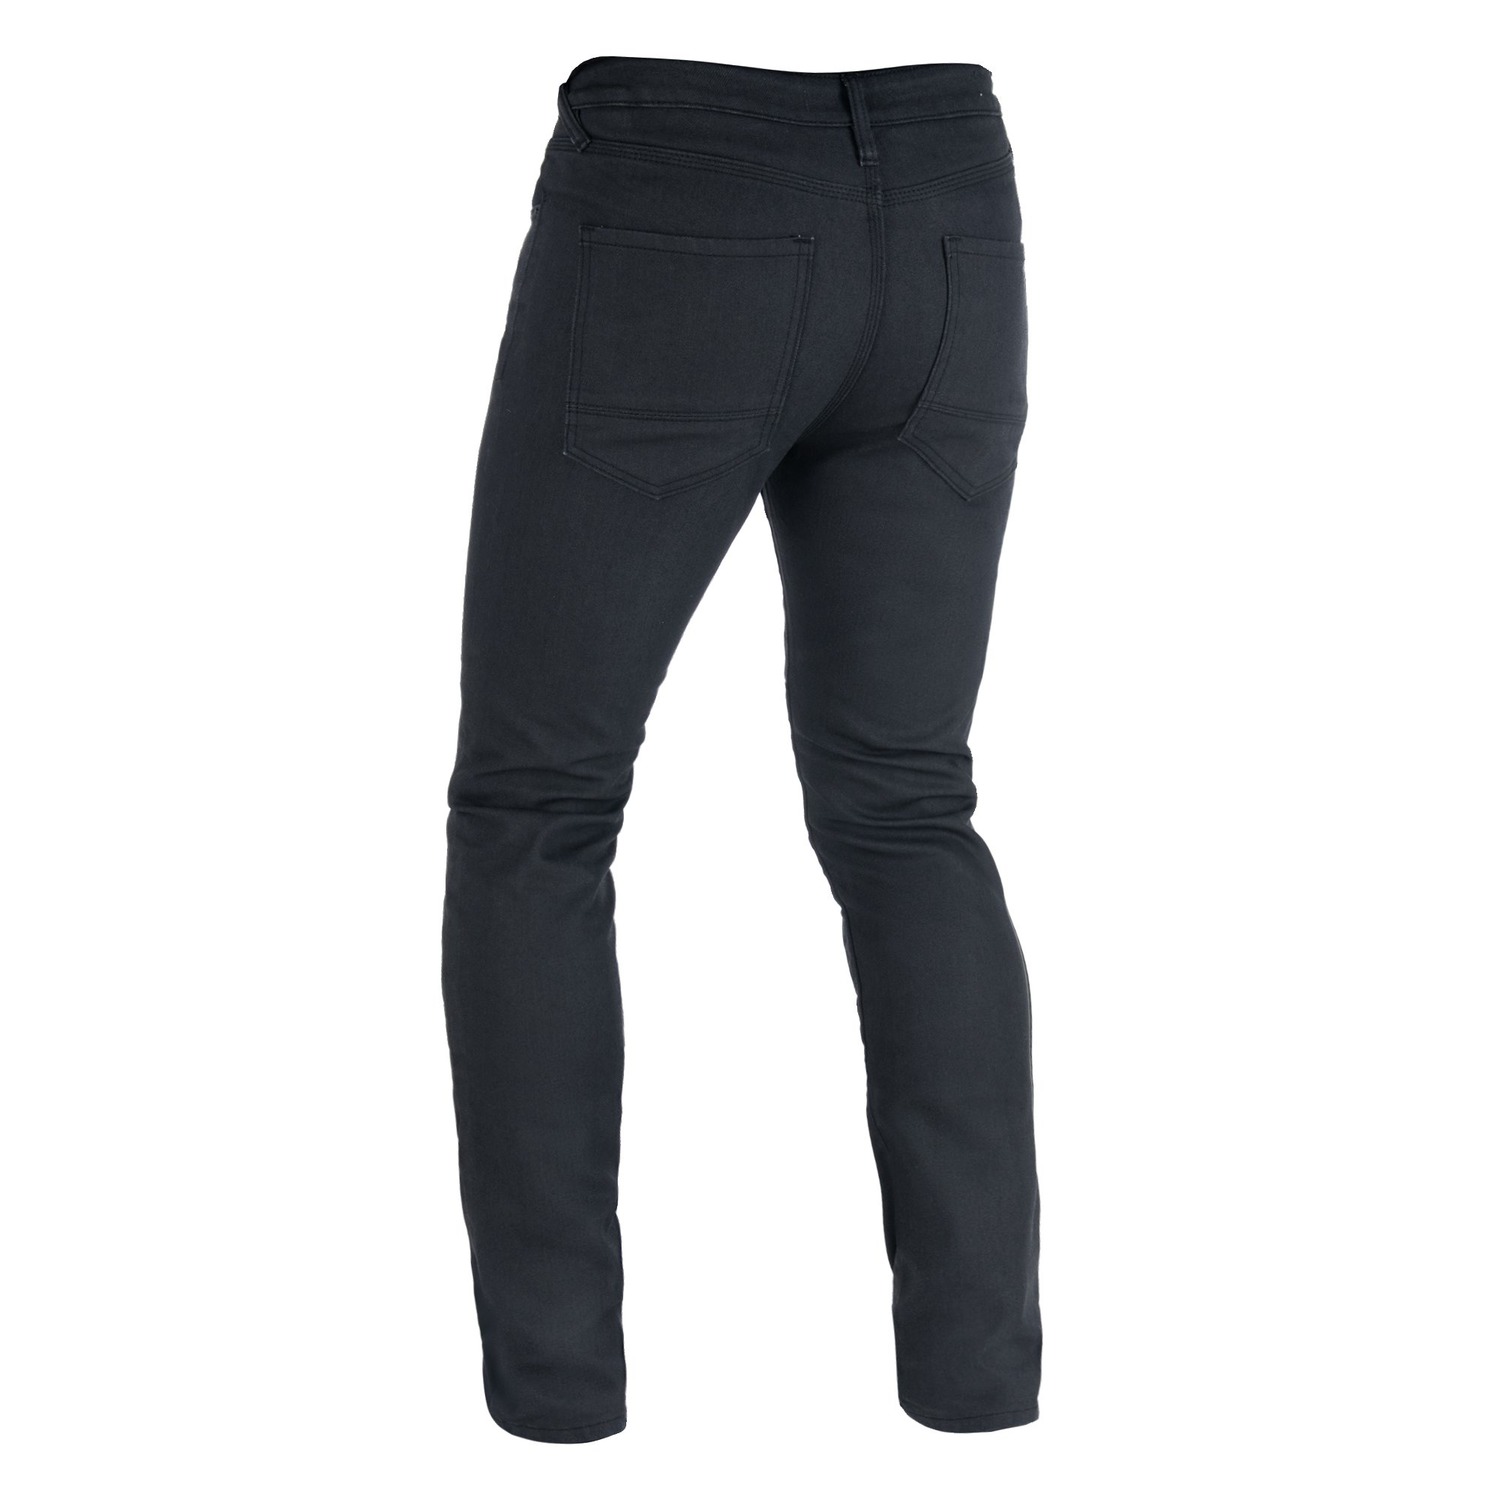 Obrázek produktu kalhoty Original Approved Jeans AA volný střih, OXFORD, pánské (černá)